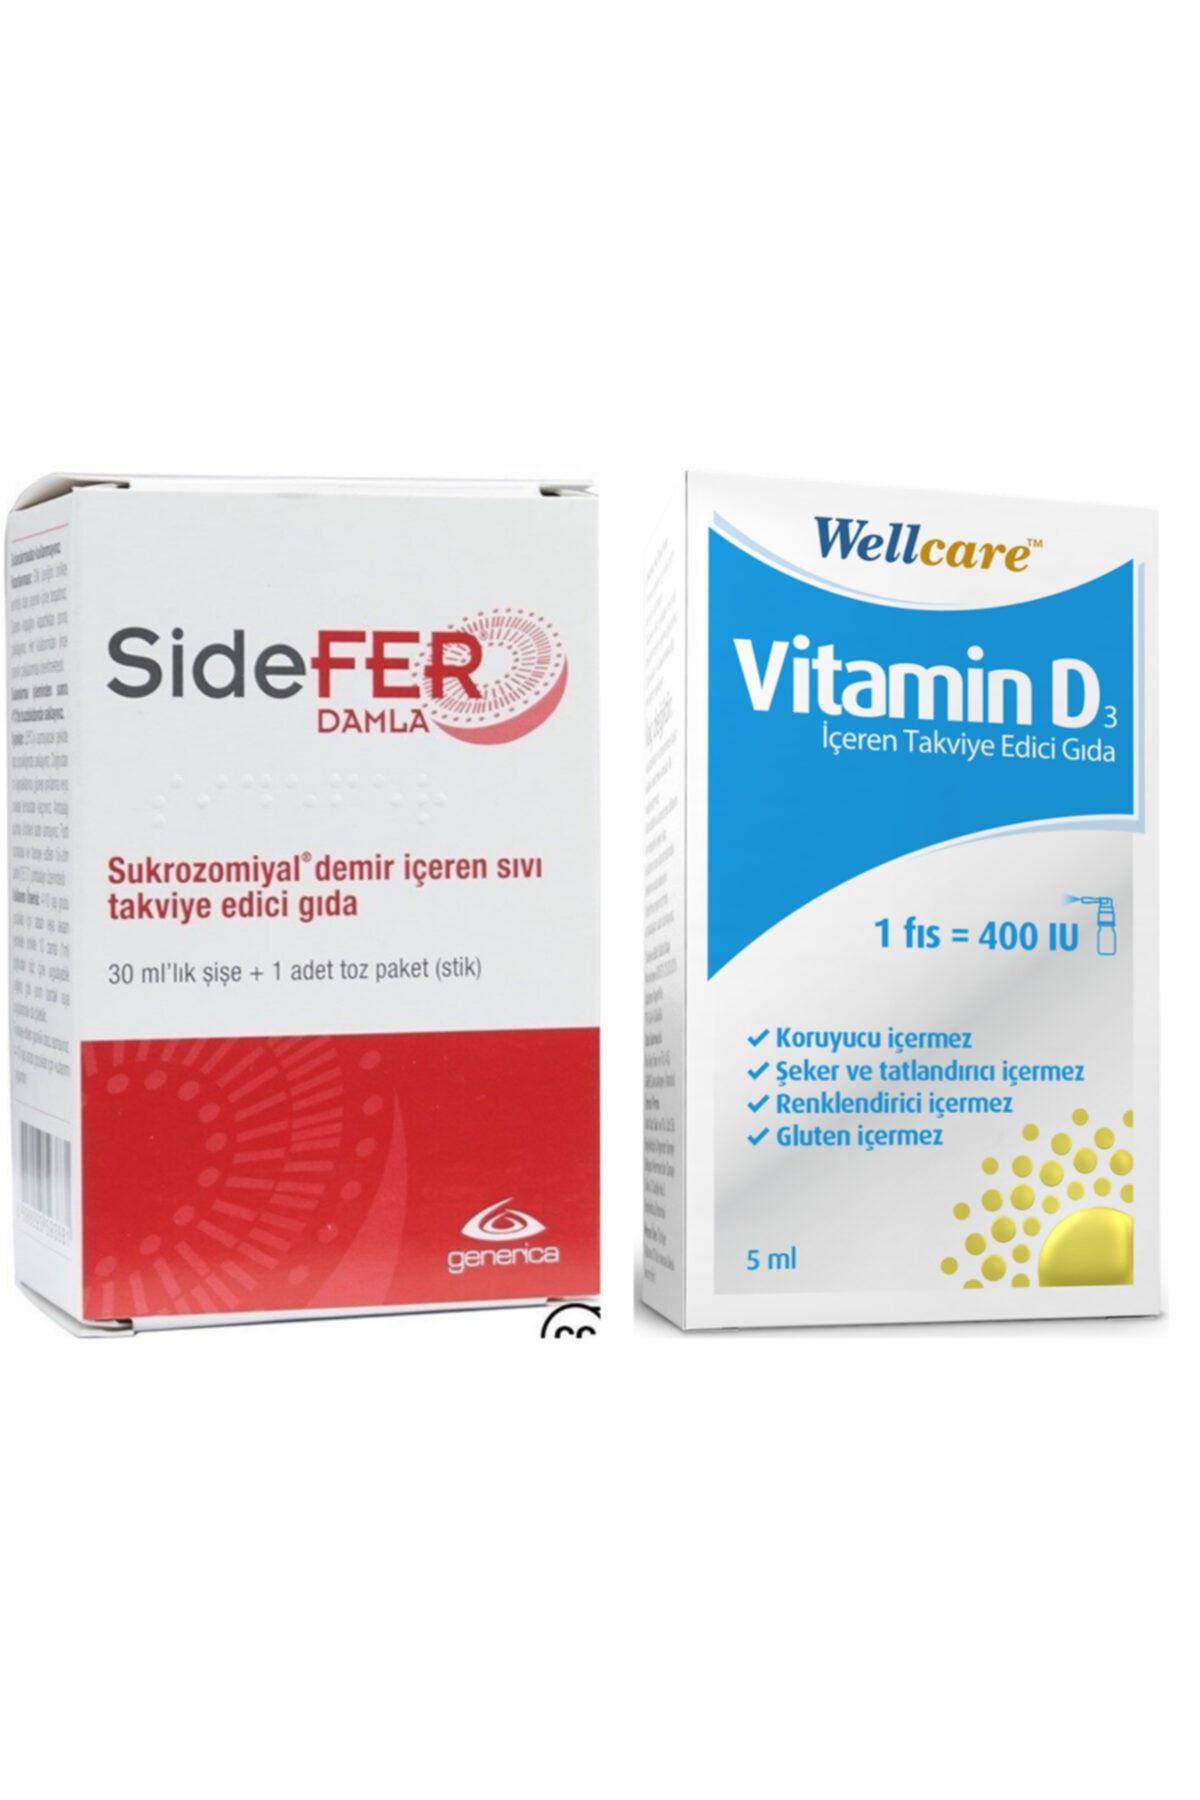 Sidefer Damla 30 ml Ve Wellcare Vitamin D3 400ıu 5 ml Sprey